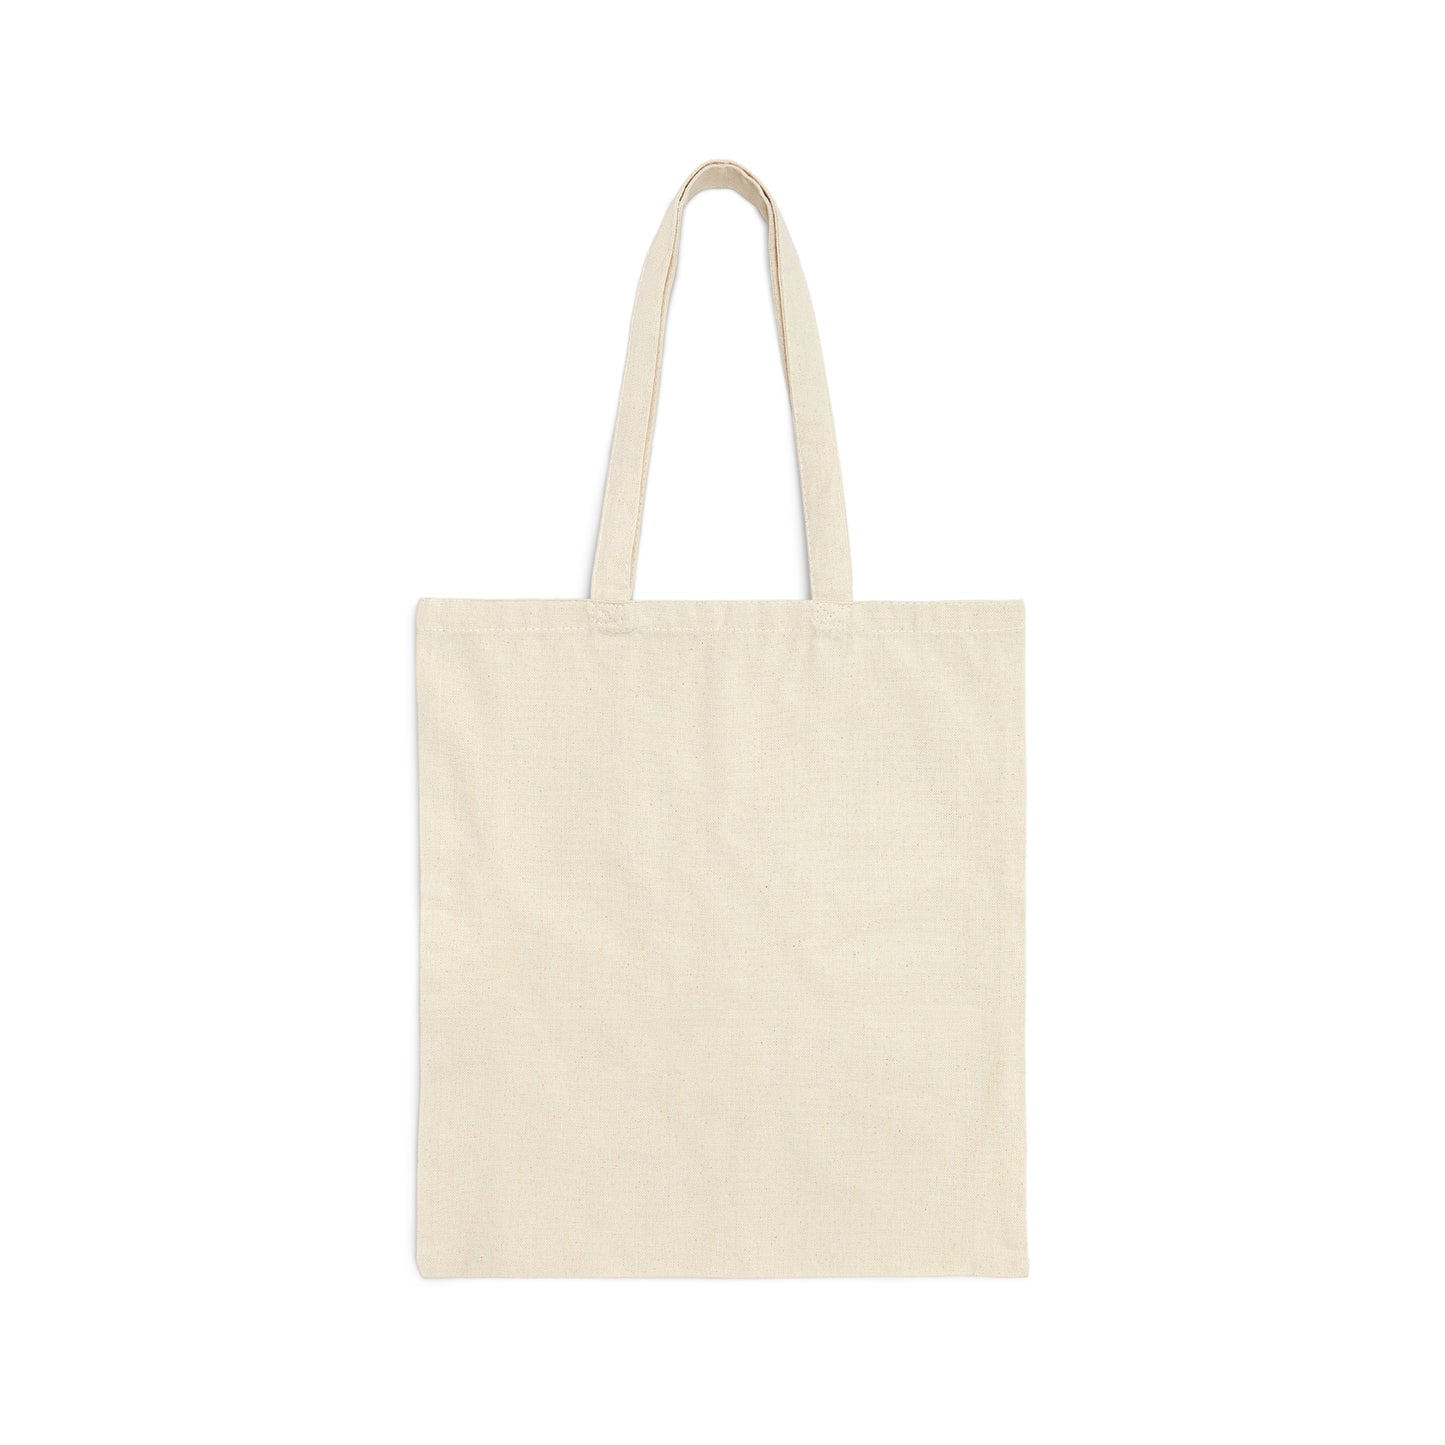 I Run on Coffee and Christmas Cheer - Christmas Tote Bag - Cotton Canvas Tote Bag